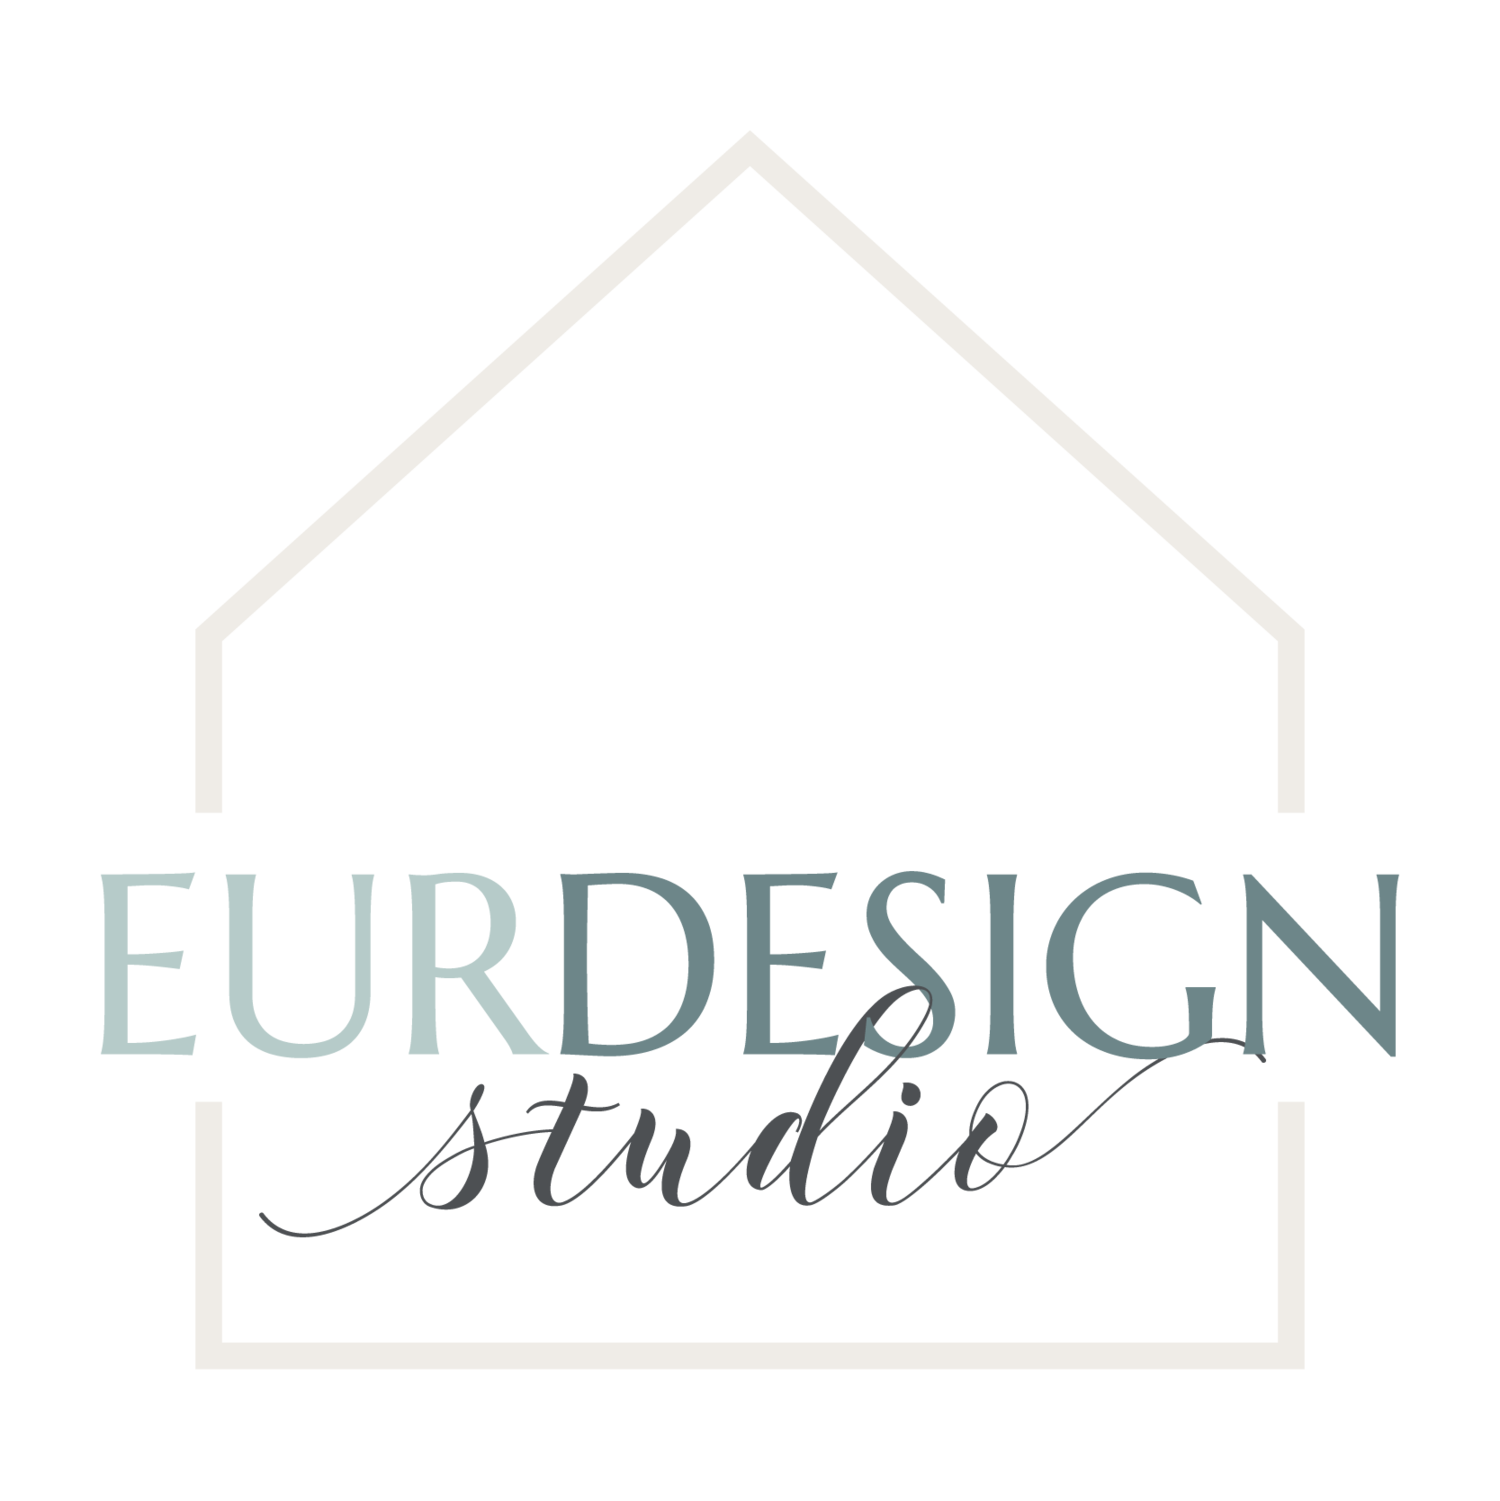 EurDesign Studio